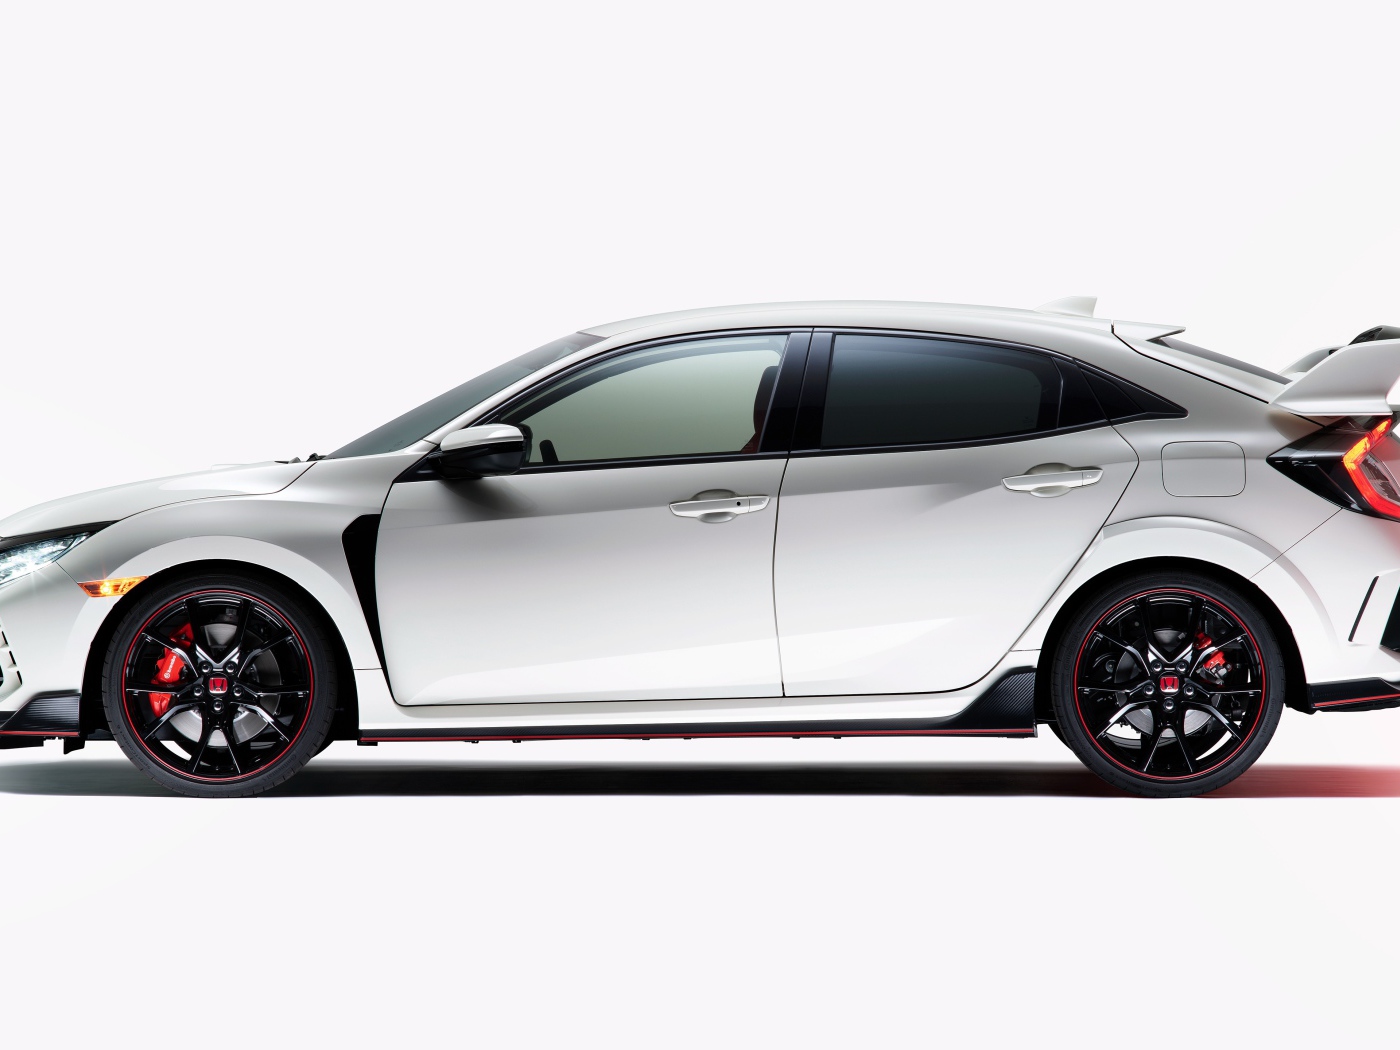 Автомобиль Honda Civic Type R 2020 года вид сбоку на белом фоне